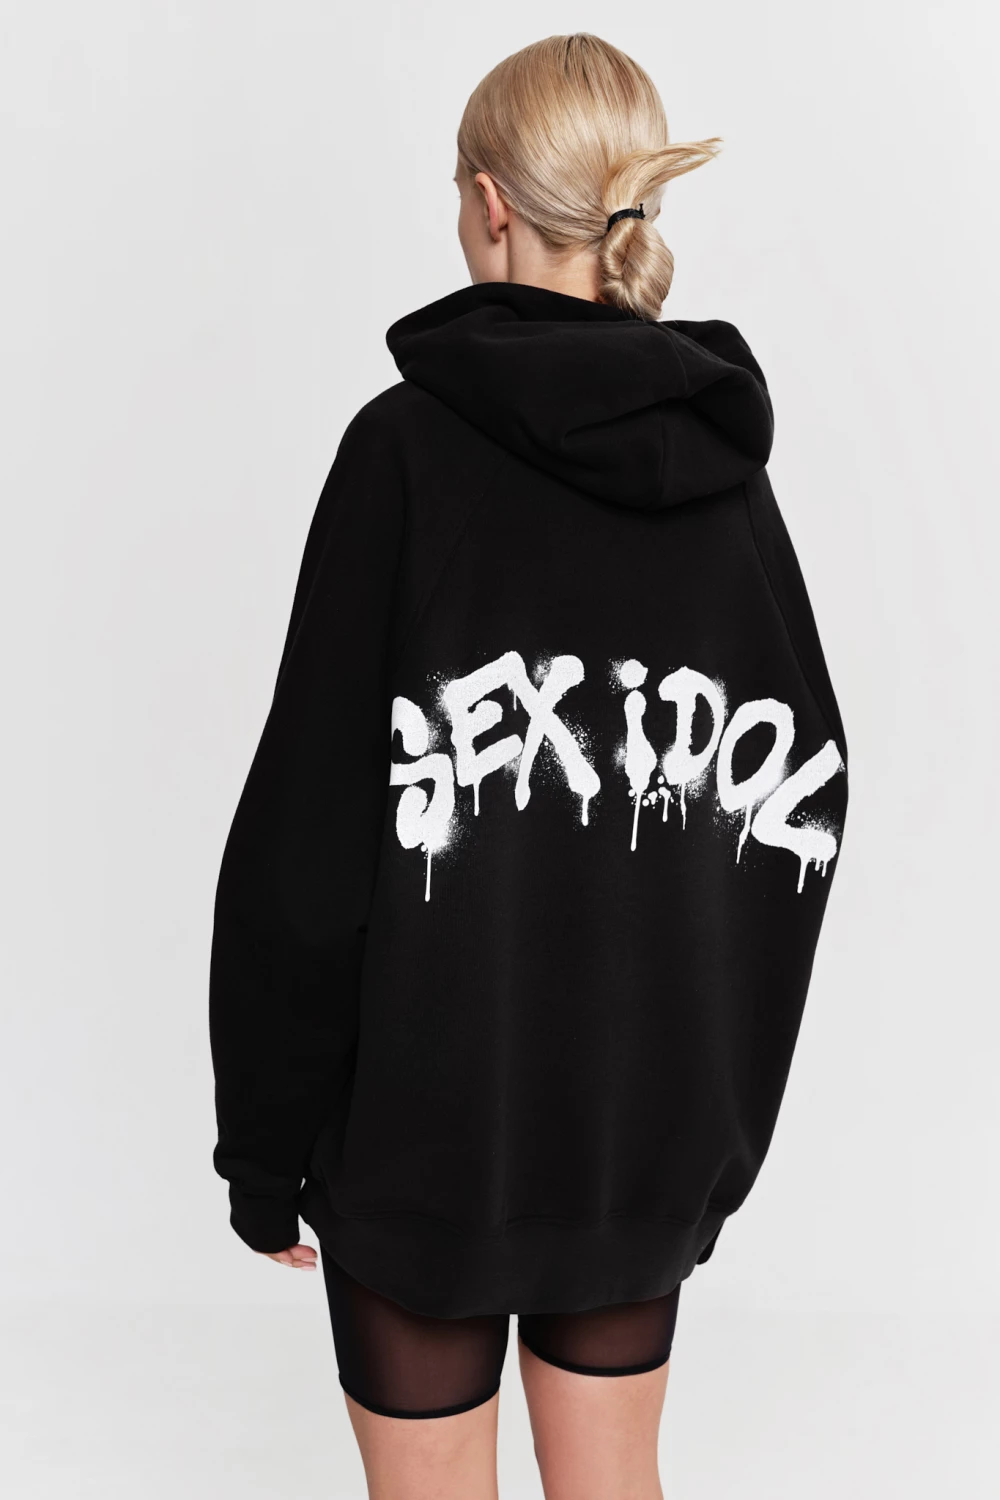 hoodie "sex idol" in black color